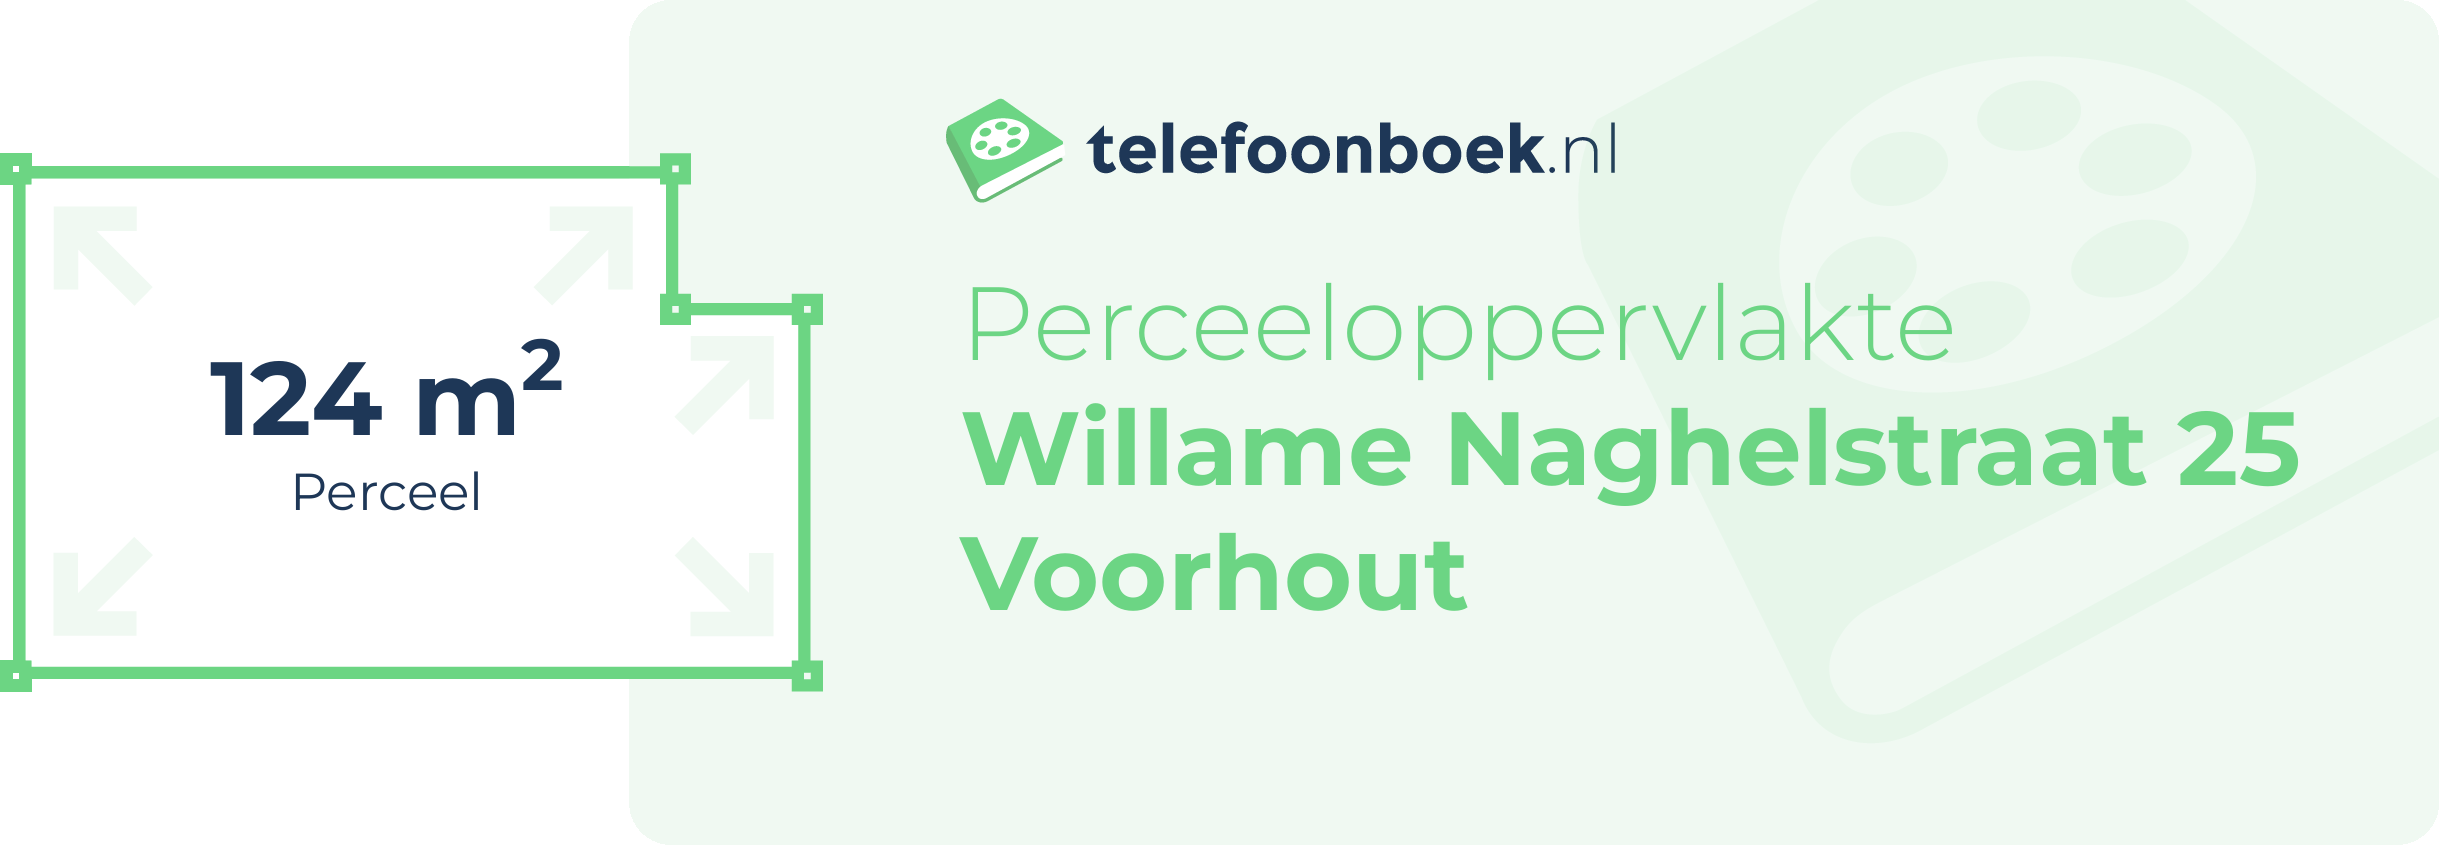 Perceeloppervlakte Willame Naghelstraat 25 Voorhout